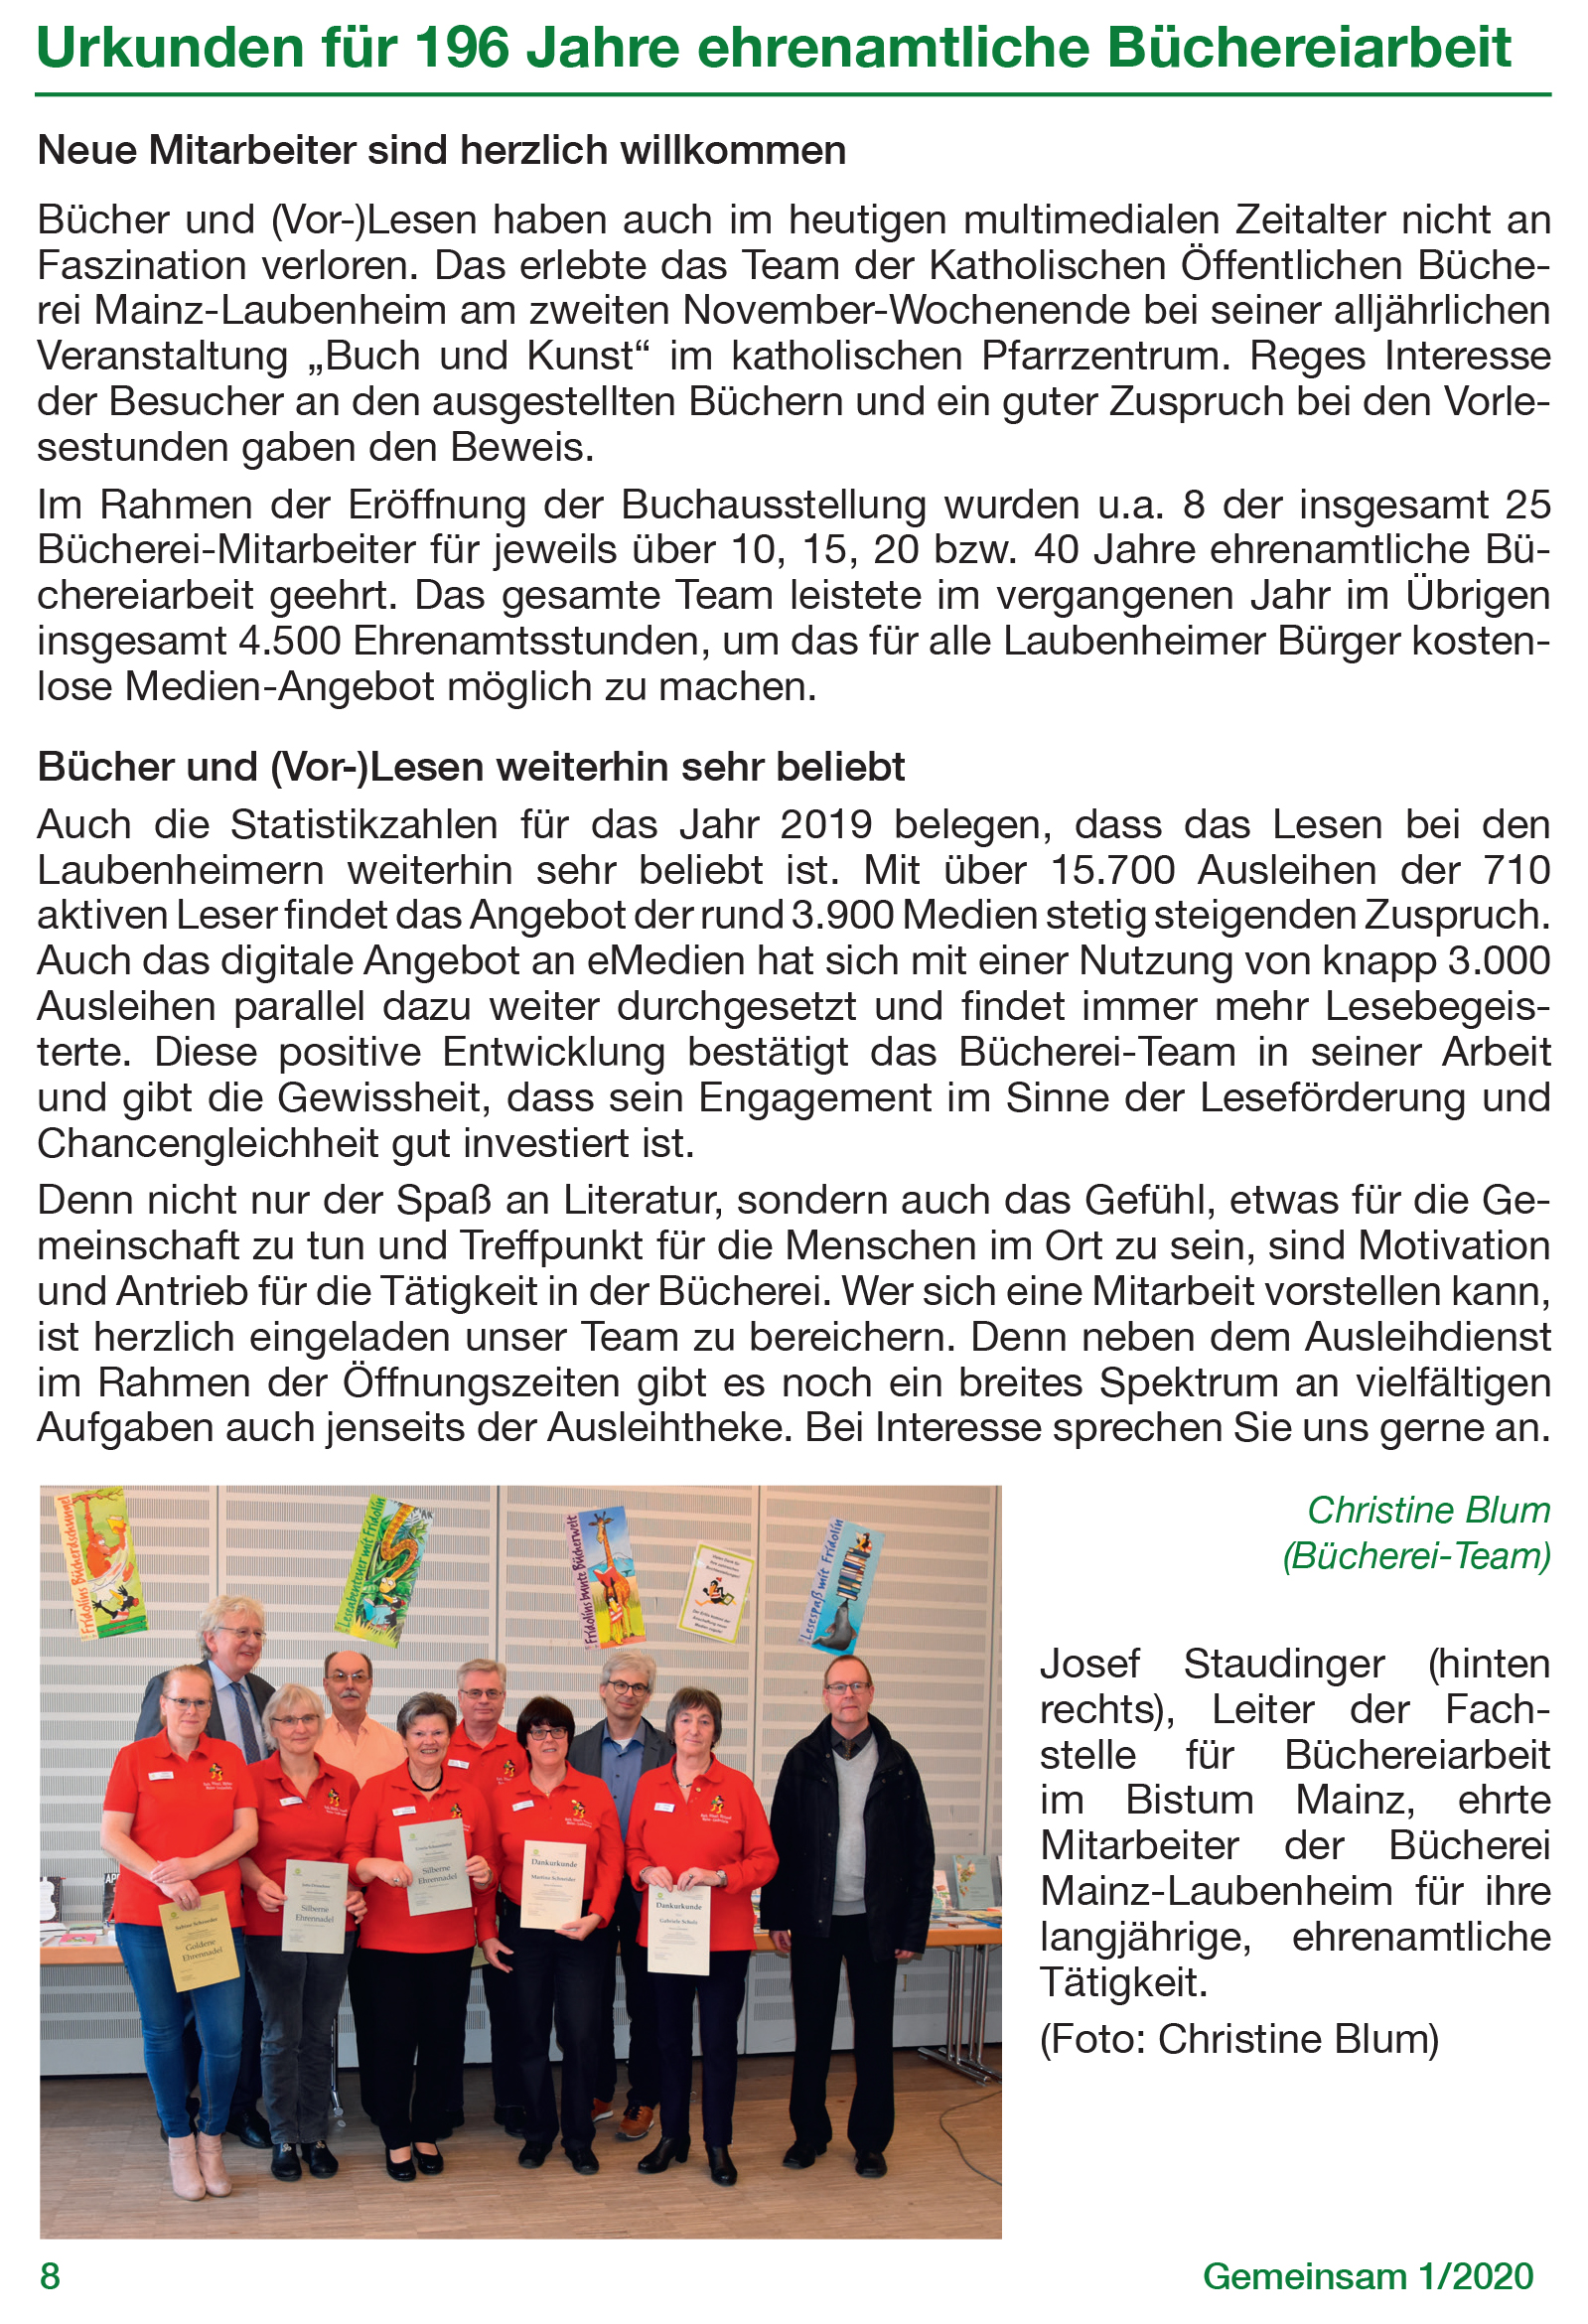 Gemeinsam_2020-1_Urkunden_fuer_Buechereiarbeit (c) Katholische Pfarrgemeinde Mainz-Laubenheim